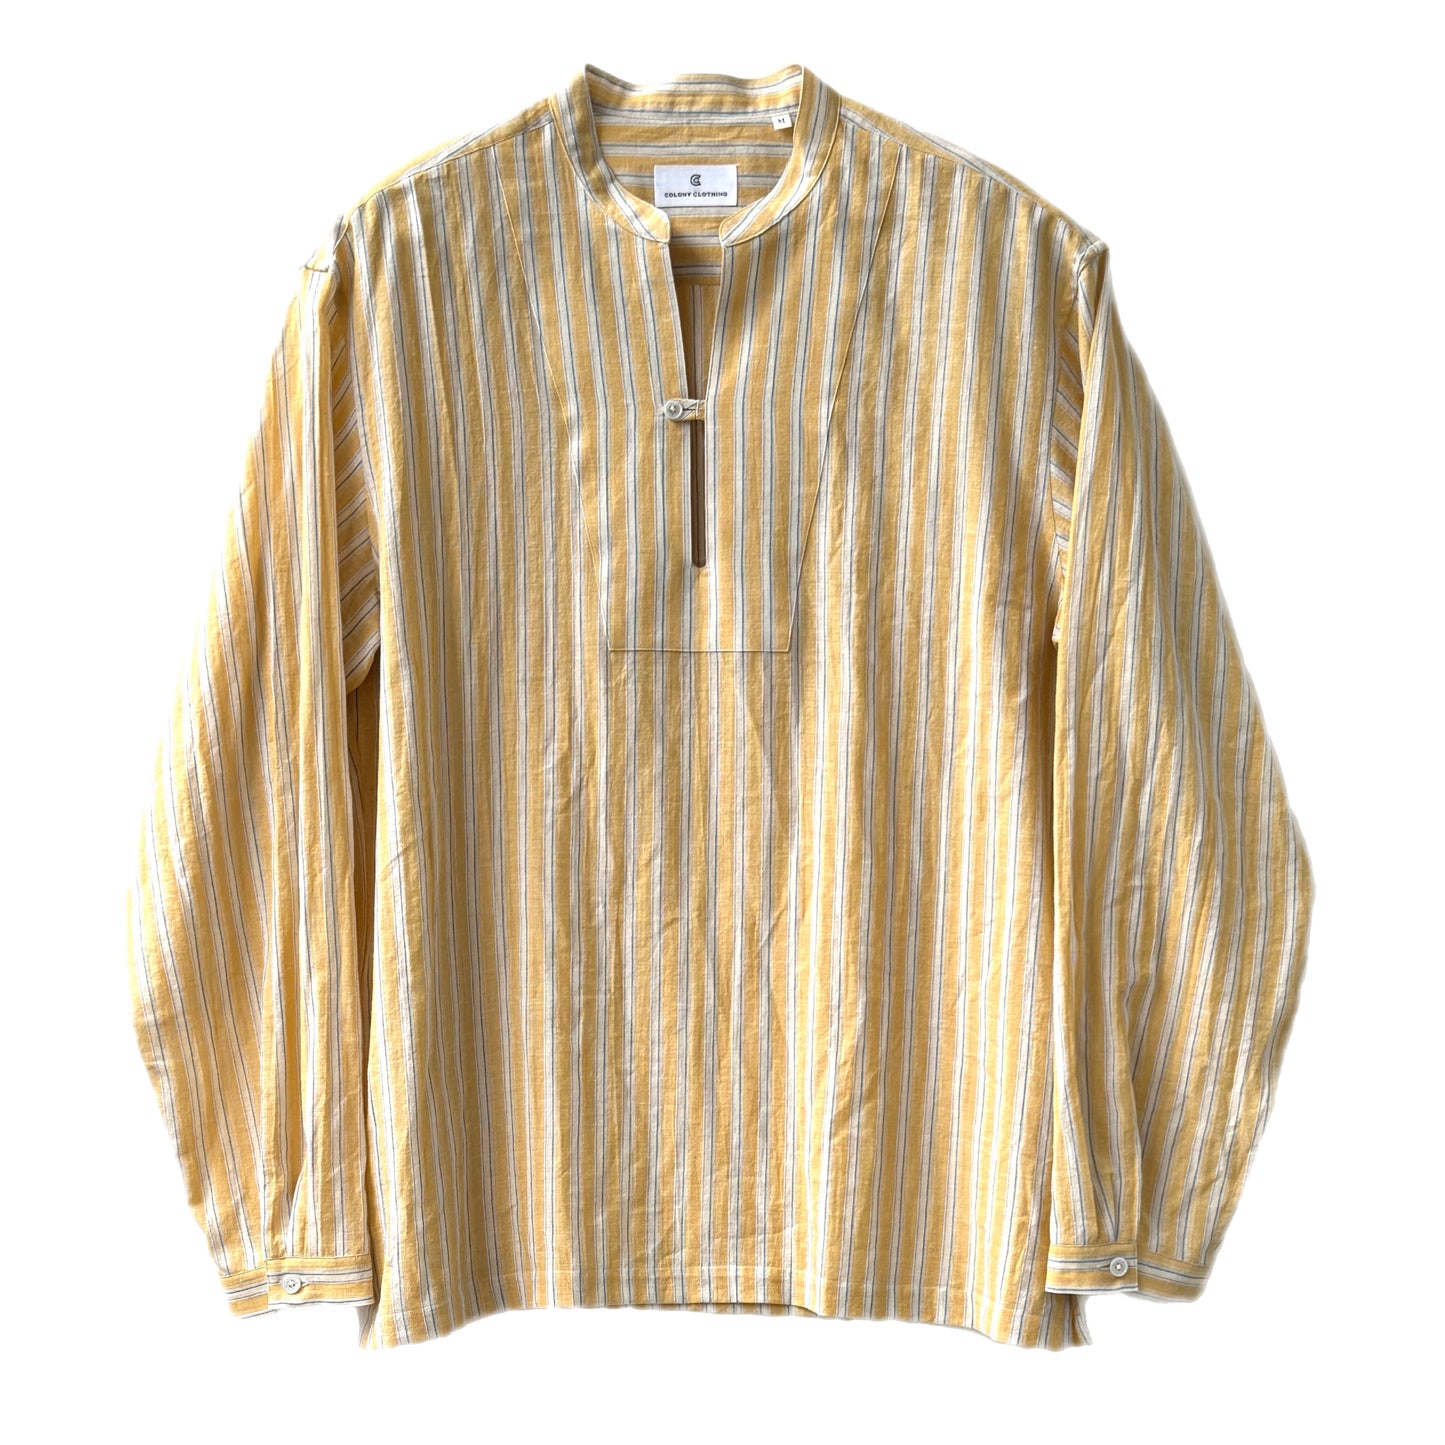 COLONY CLOTHING /  コットンリネンストライプ スキッパーシャツ / CC2401-SH06-01